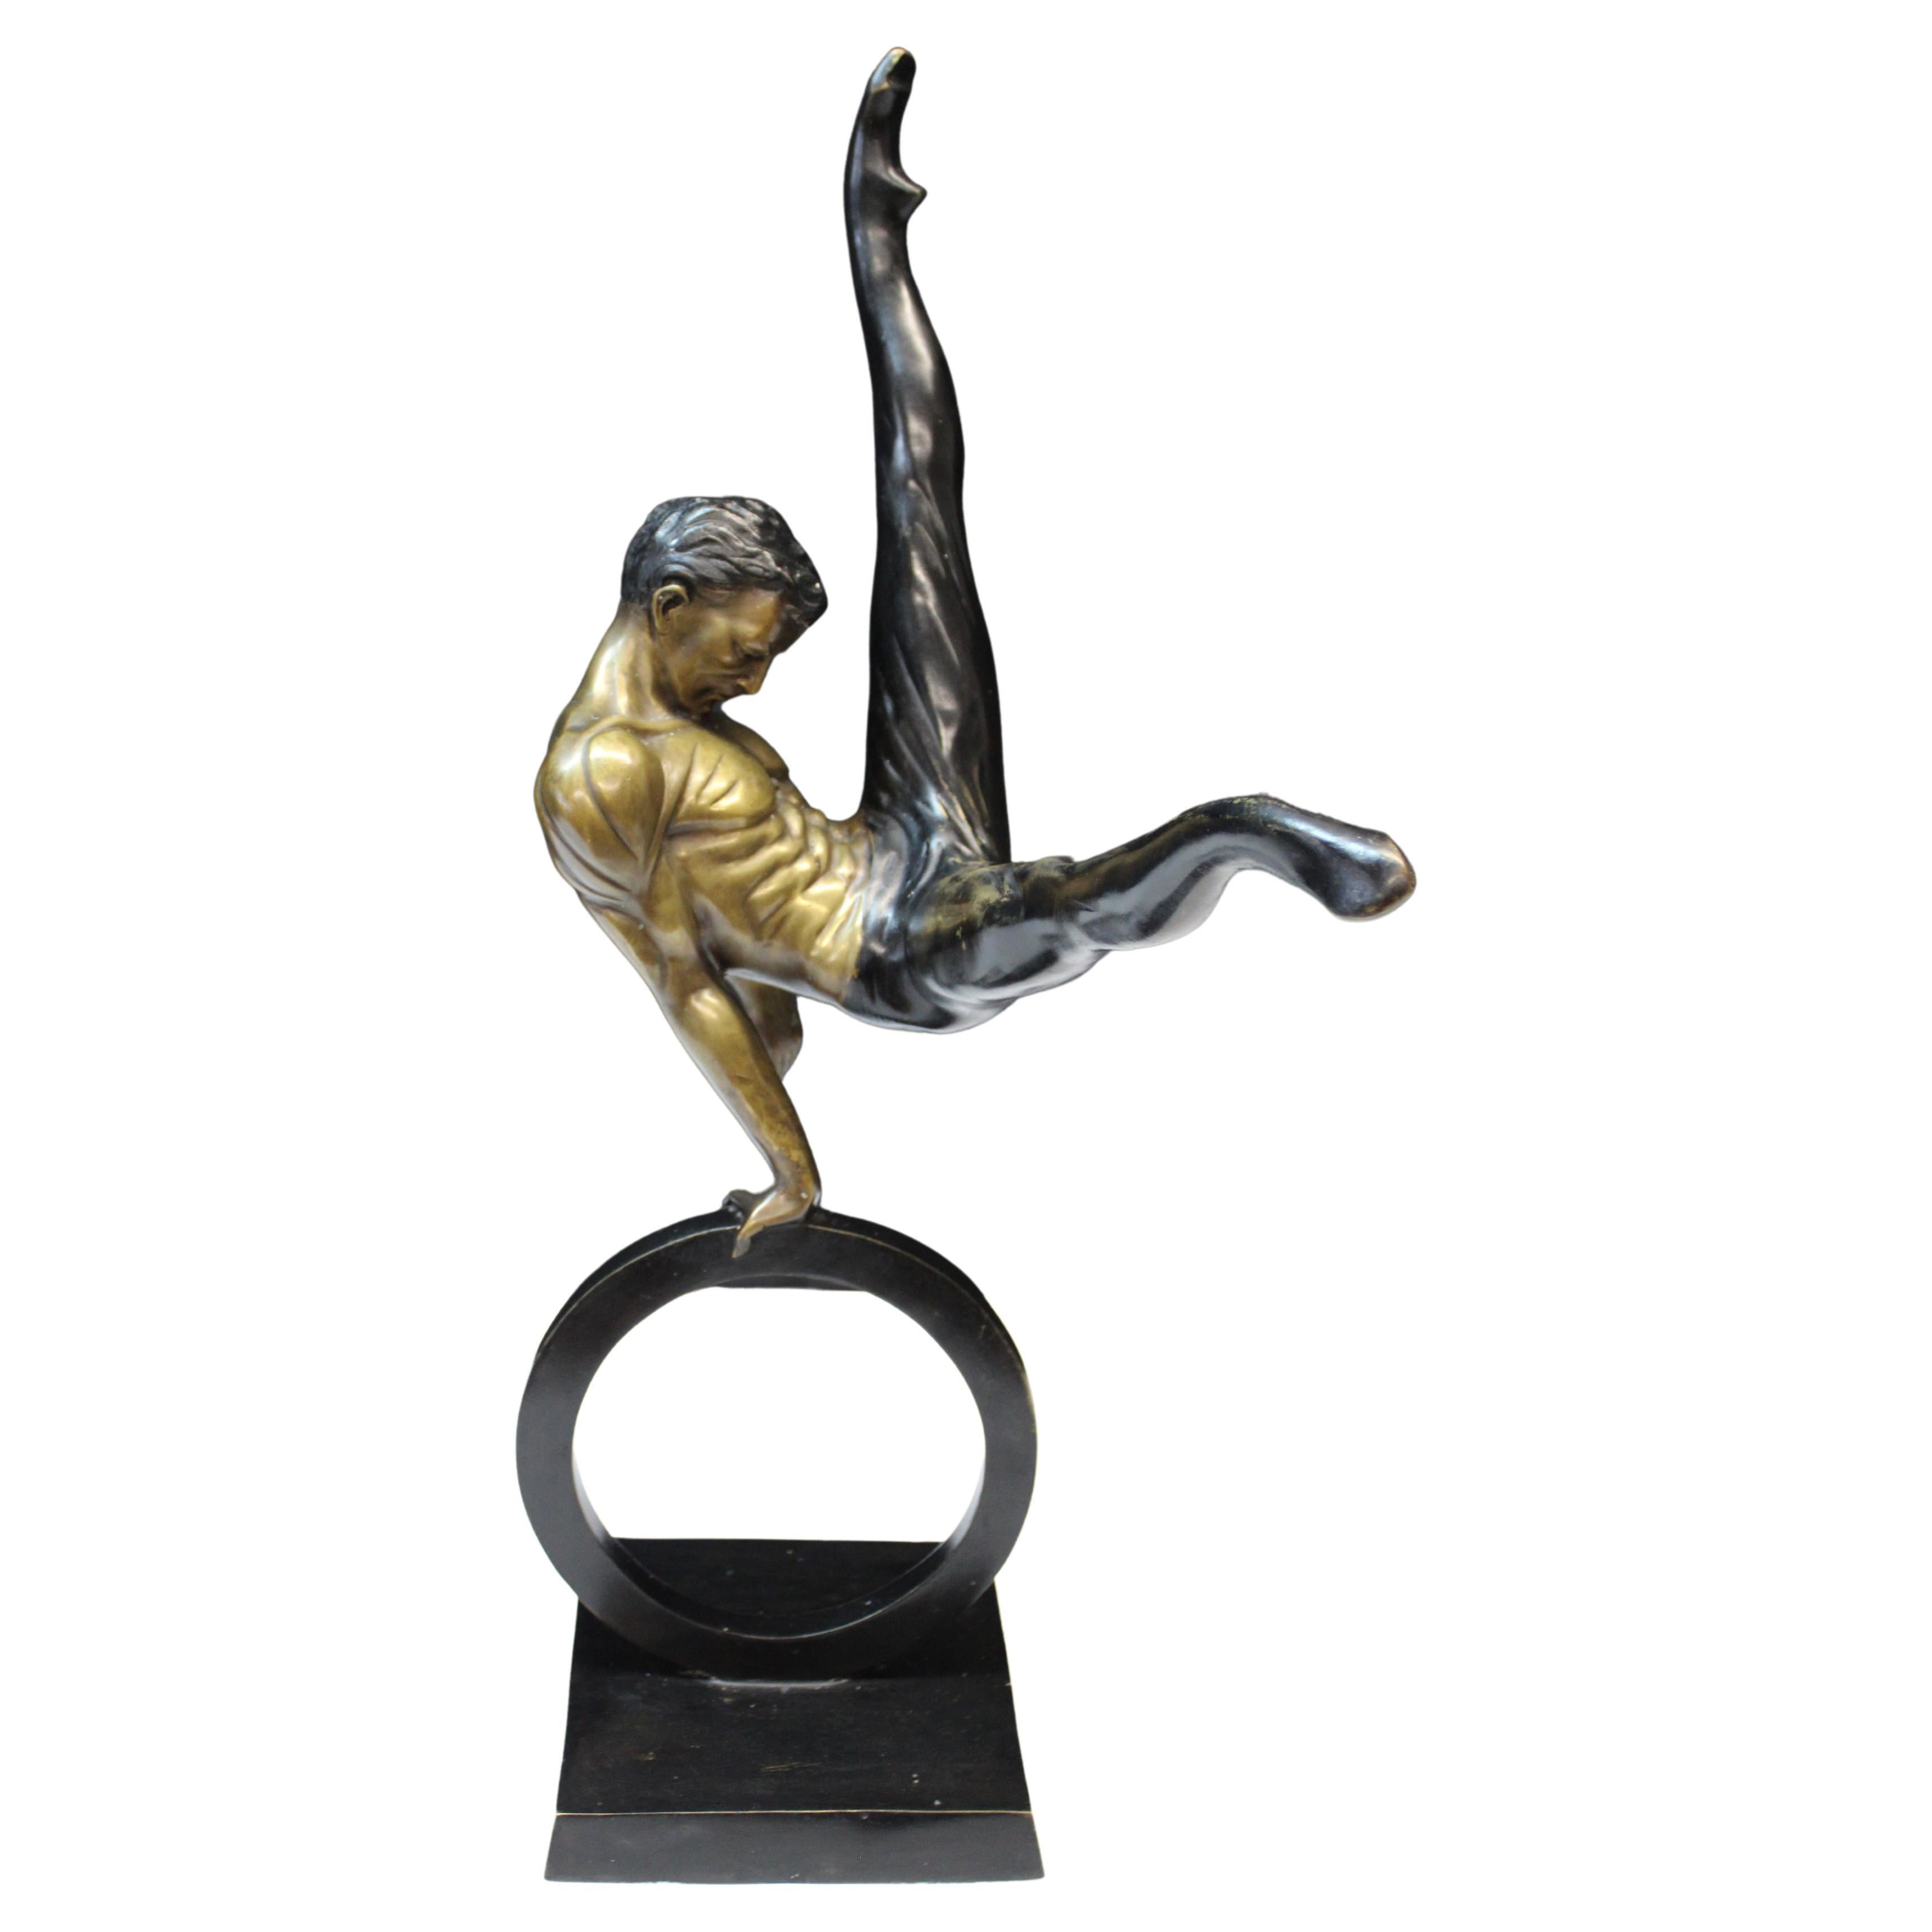 Sculpture en métal des années 1970 représentant un acrobate ou un gymnaste